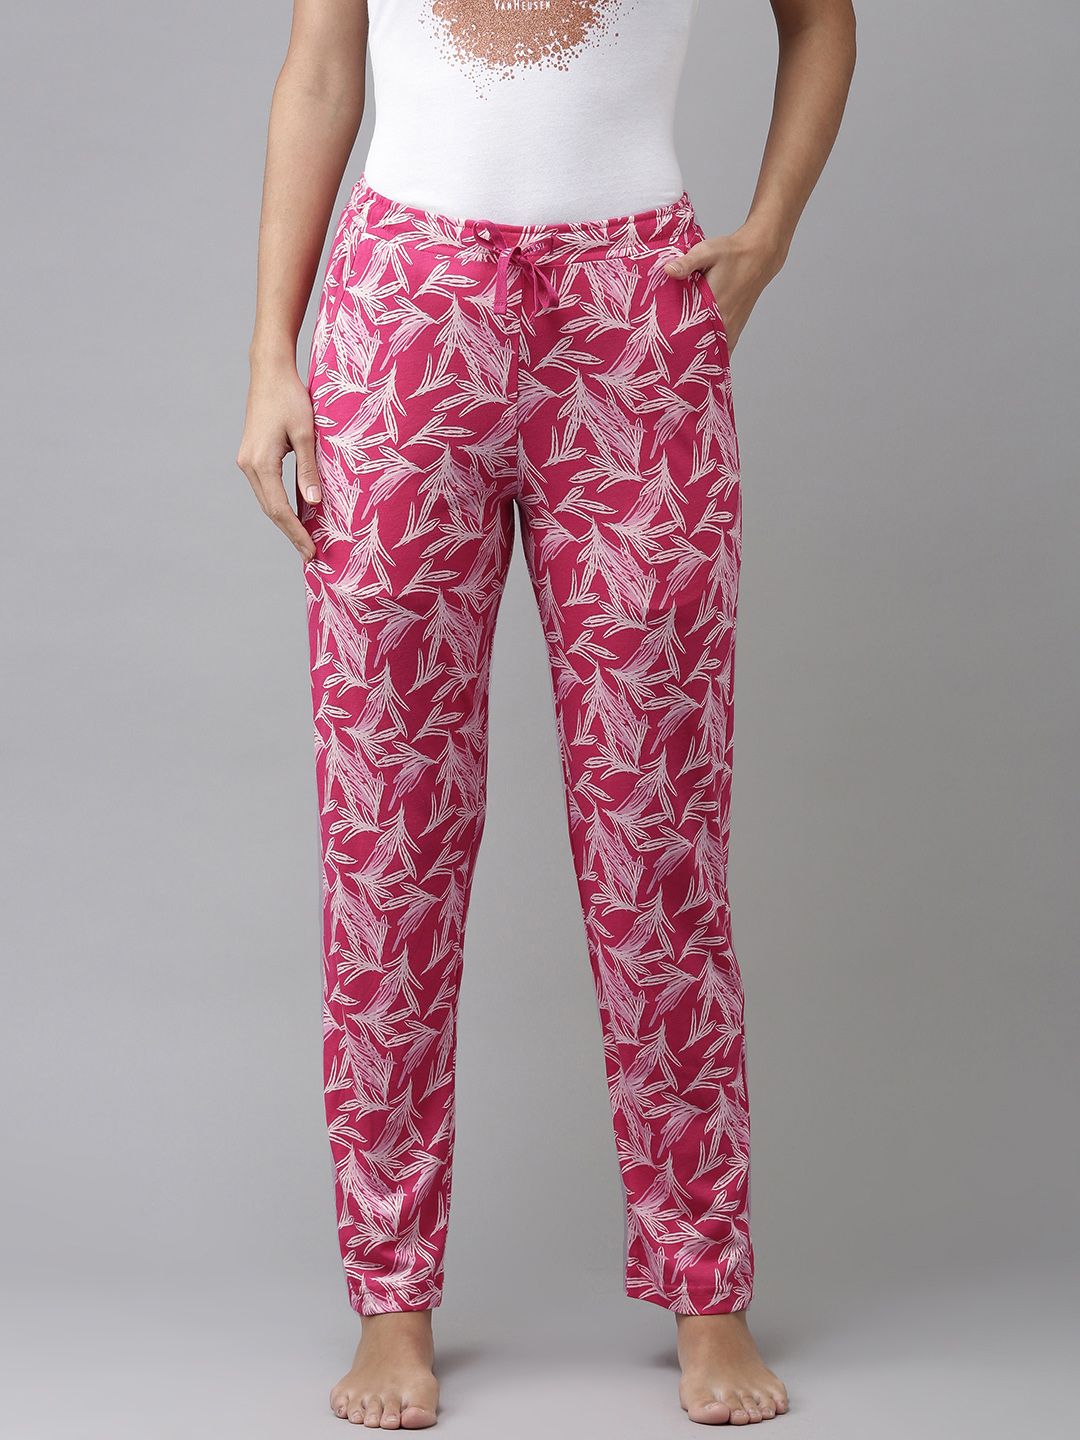 Van Heusen Women Pink & White Printed Soft Lounge Pants Price in India